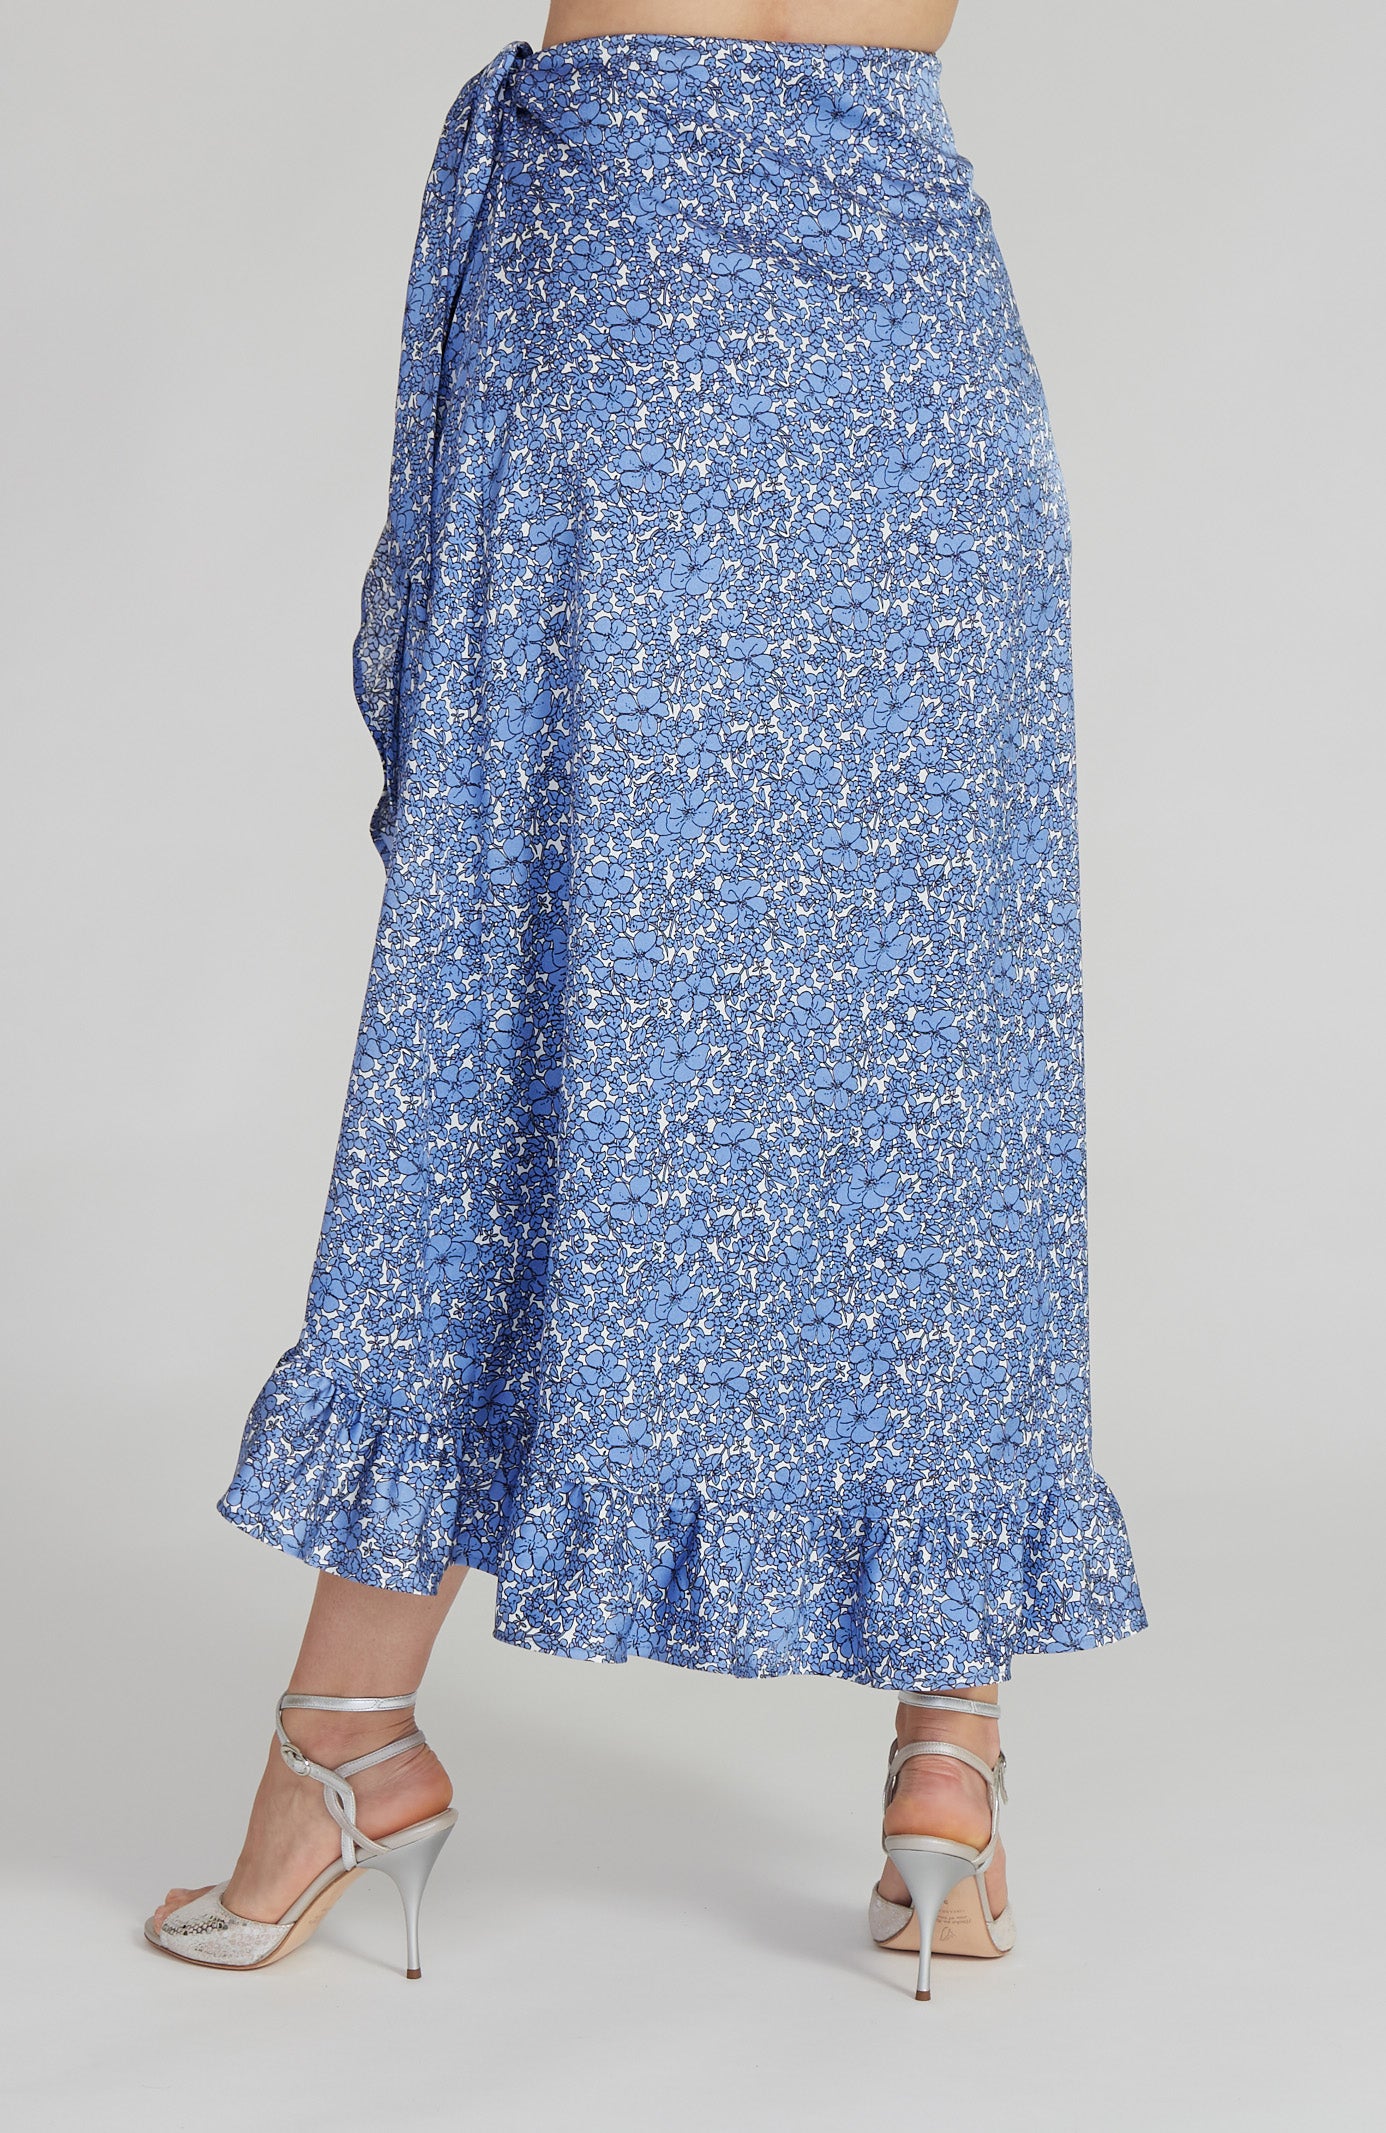 DINA - Ruffle Hem Wrap Skirt in Sky Blue Florals